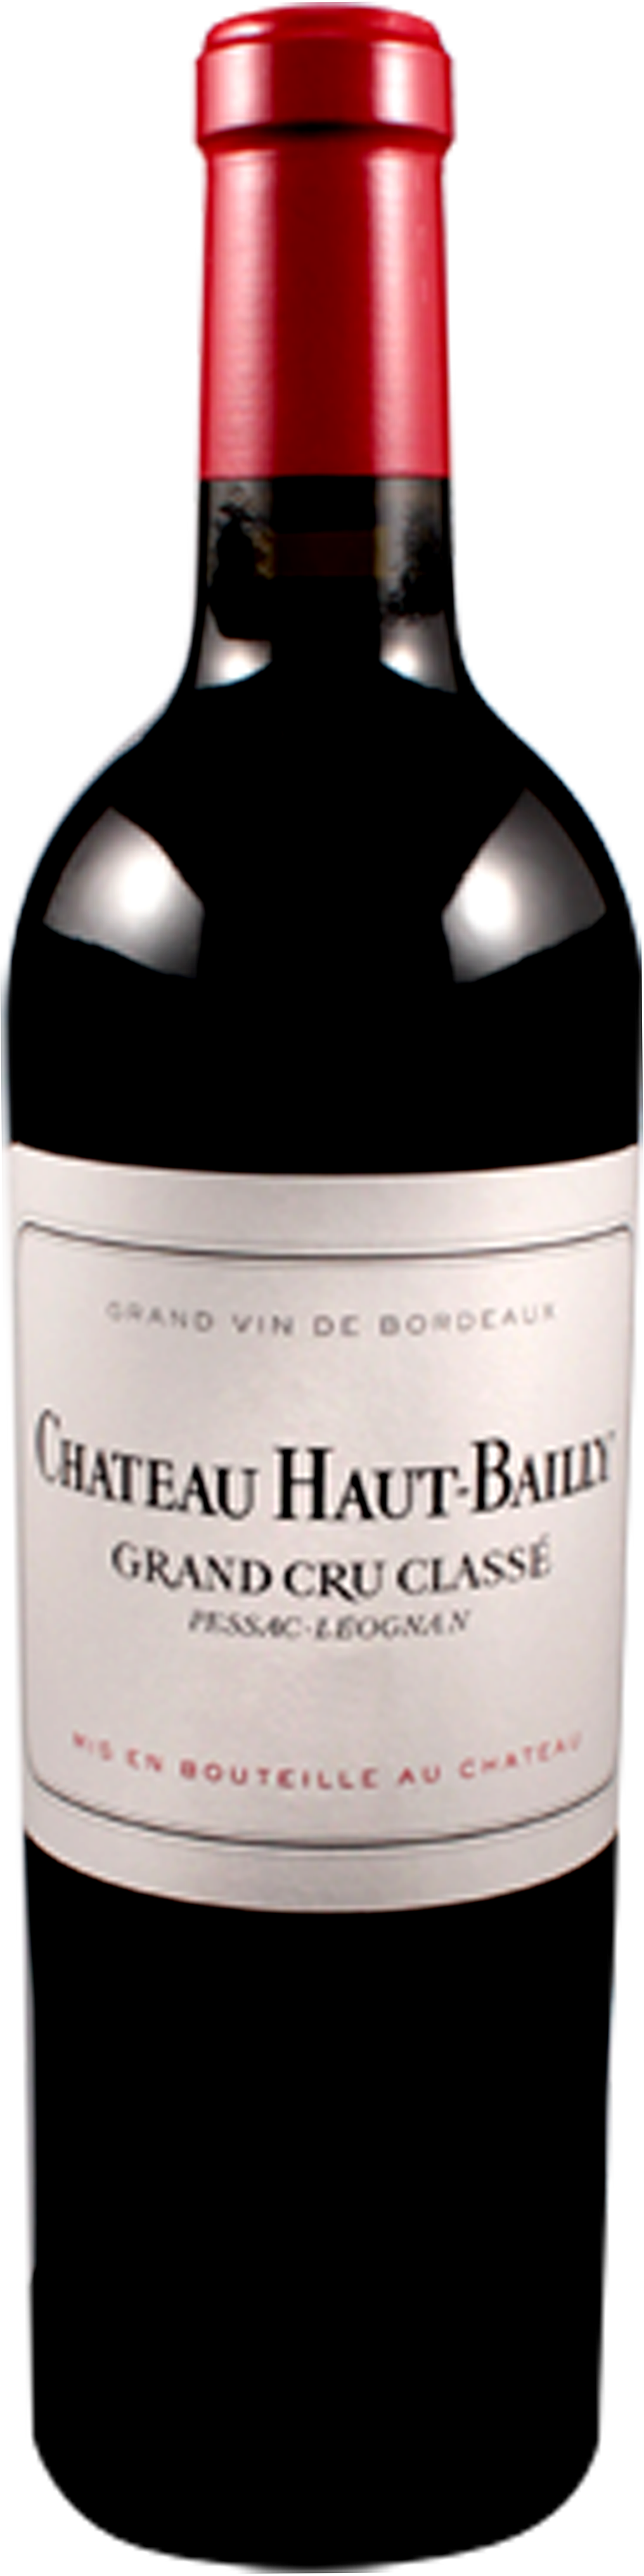 Bottle shot of 2006 Château Haut Bailly, Cru Classé Graves